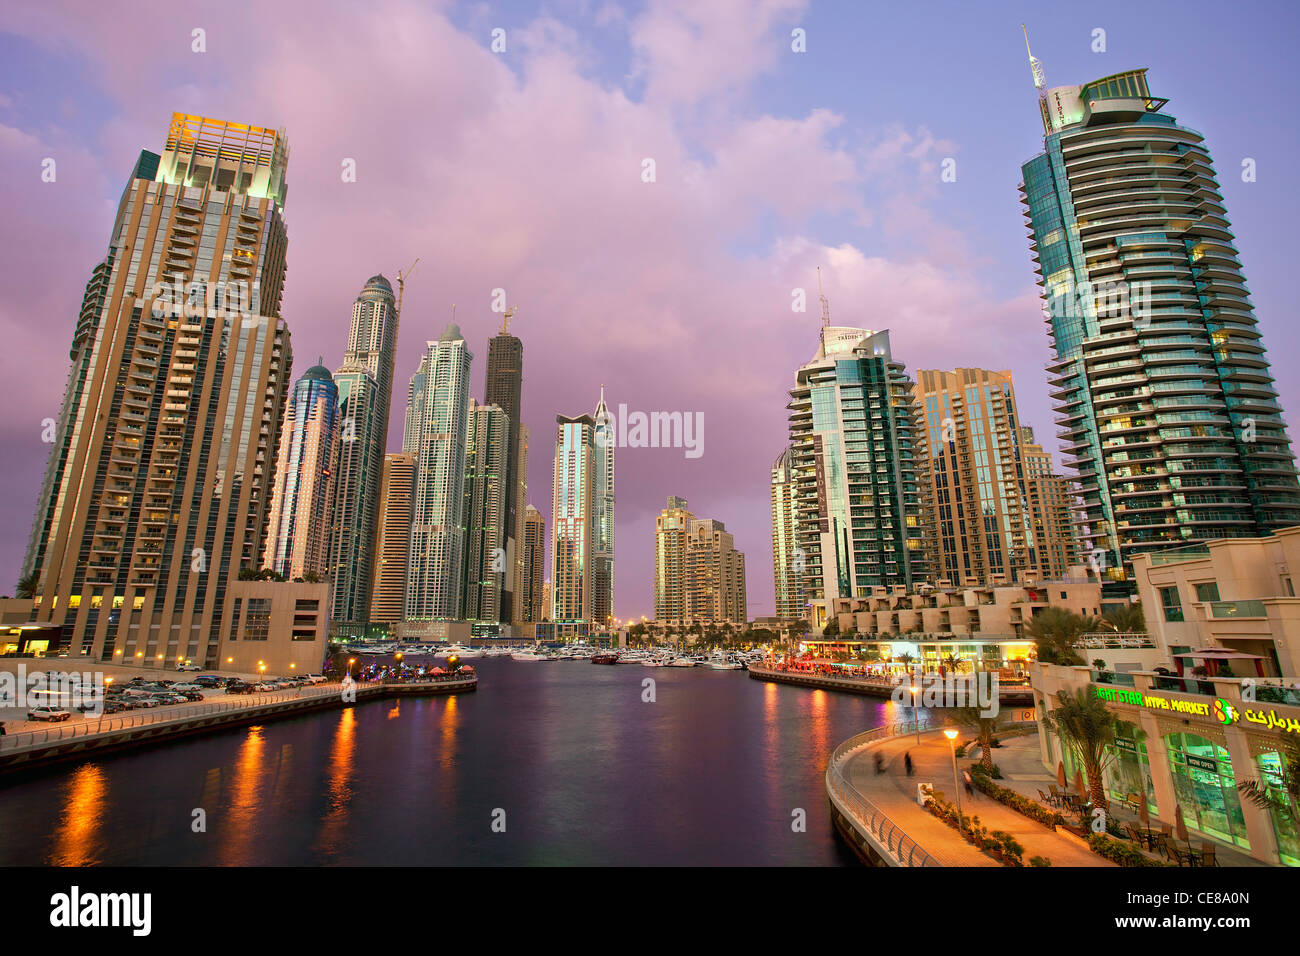 Asia, Arabia, Dubai Emirate, Dubai, Harbor and Skyscrapers of Dubai Marina Stock Photo